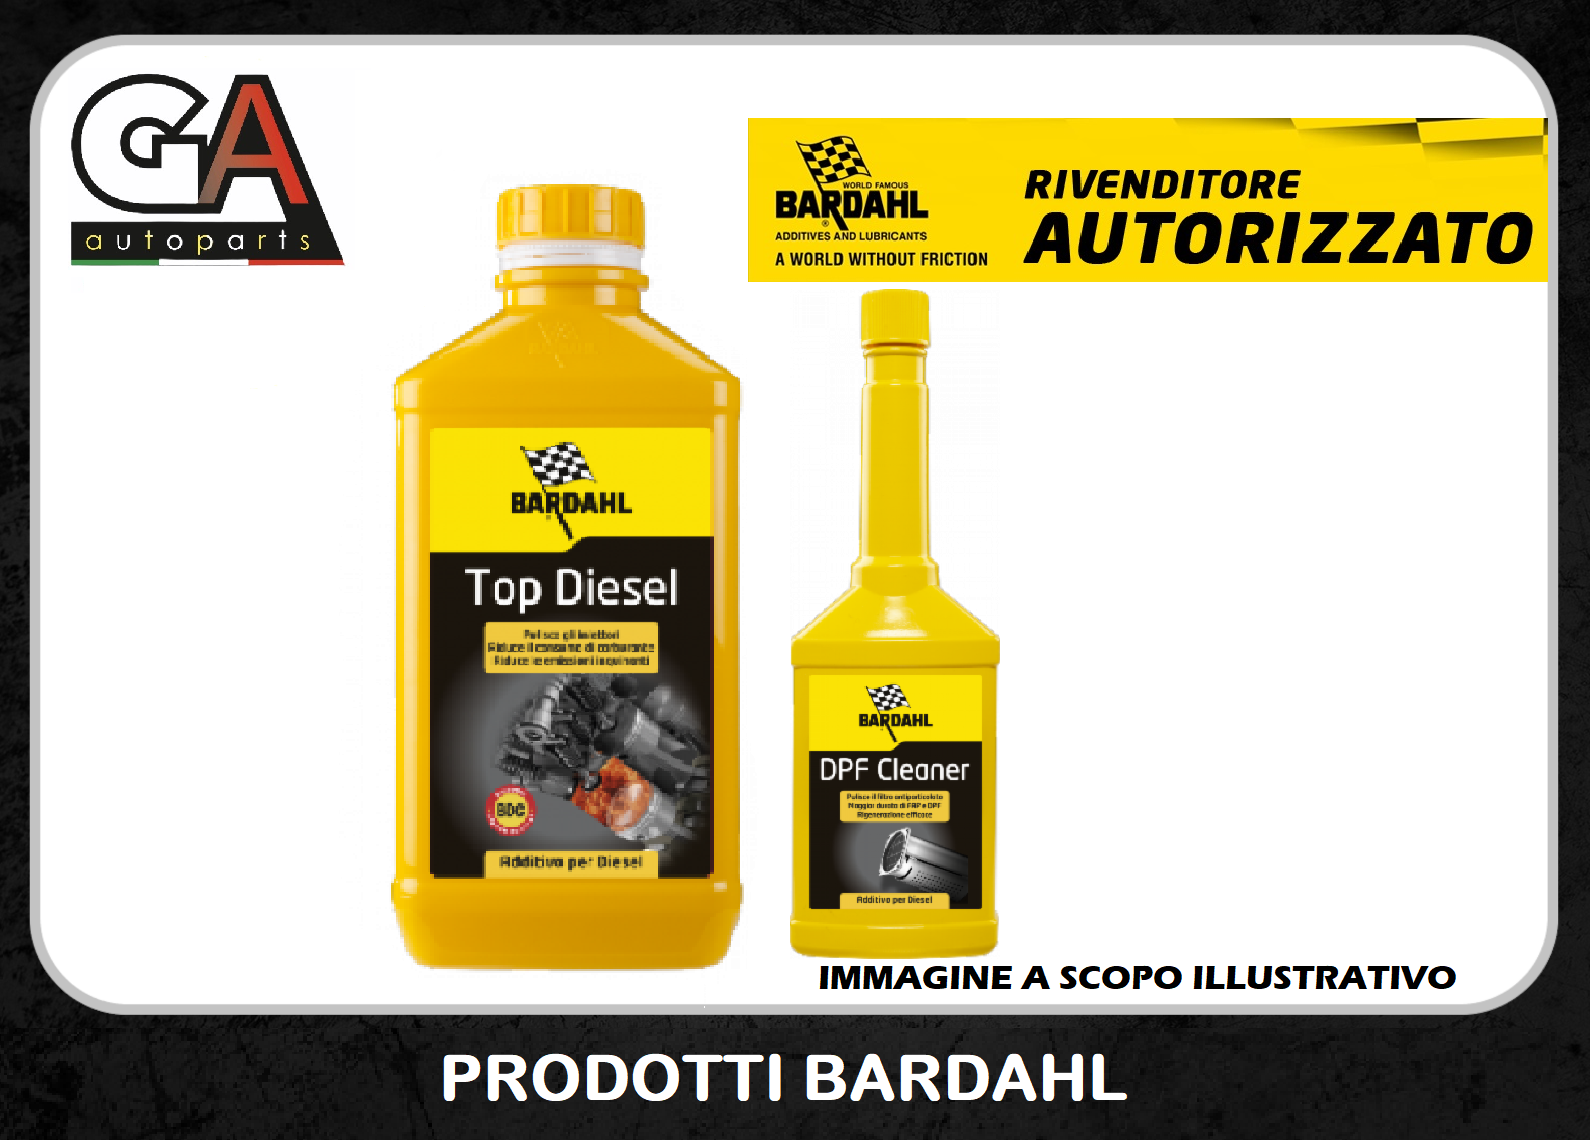 Top Diesel Bardahl Additivo Pulitore pulizia iniettori FAP Cleaner DPF FAP  - Ricambi Auto GautopartsProdotto